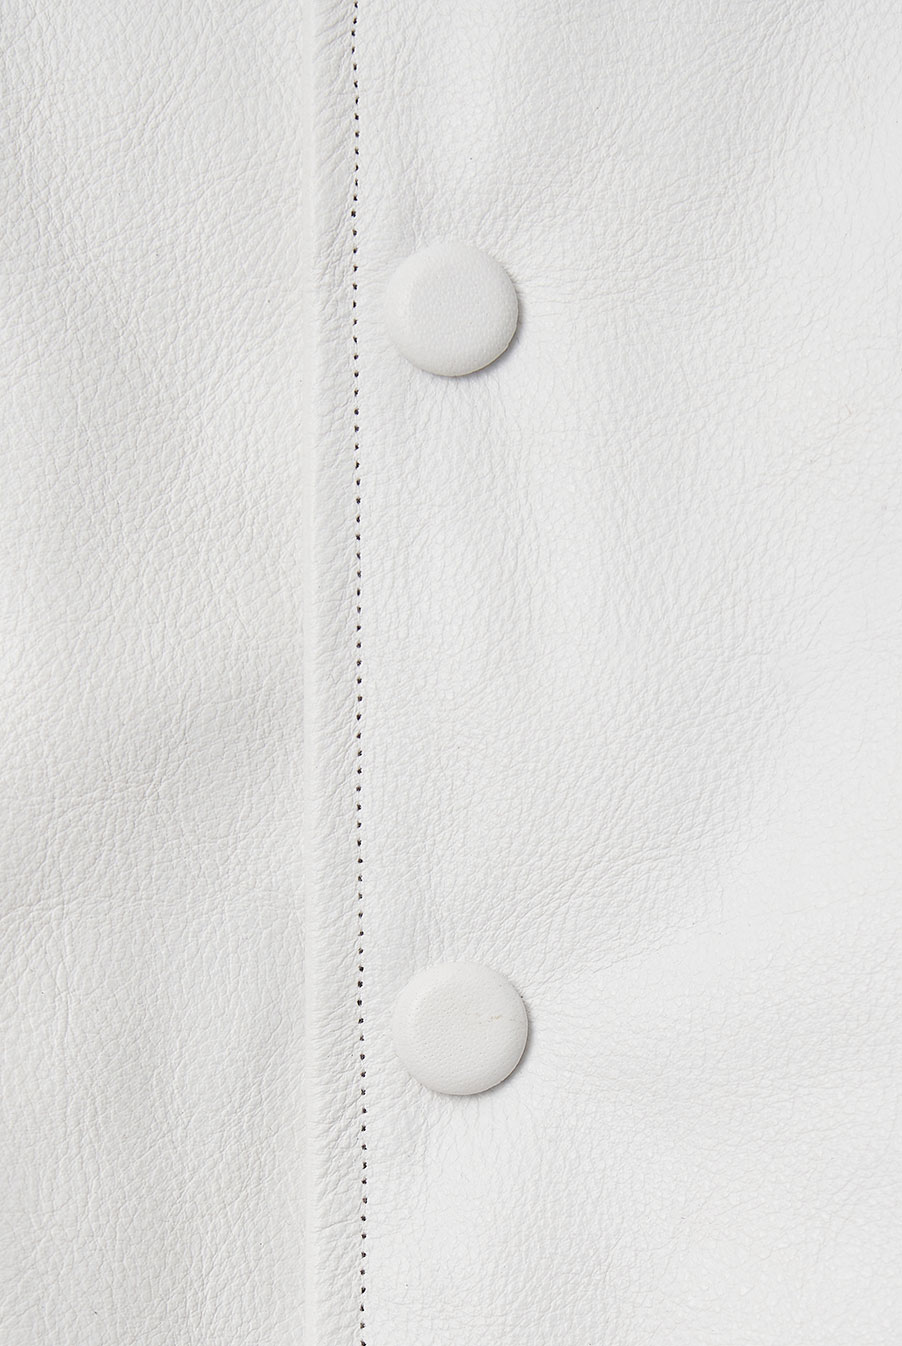 Bulky Varsity Jacket - White